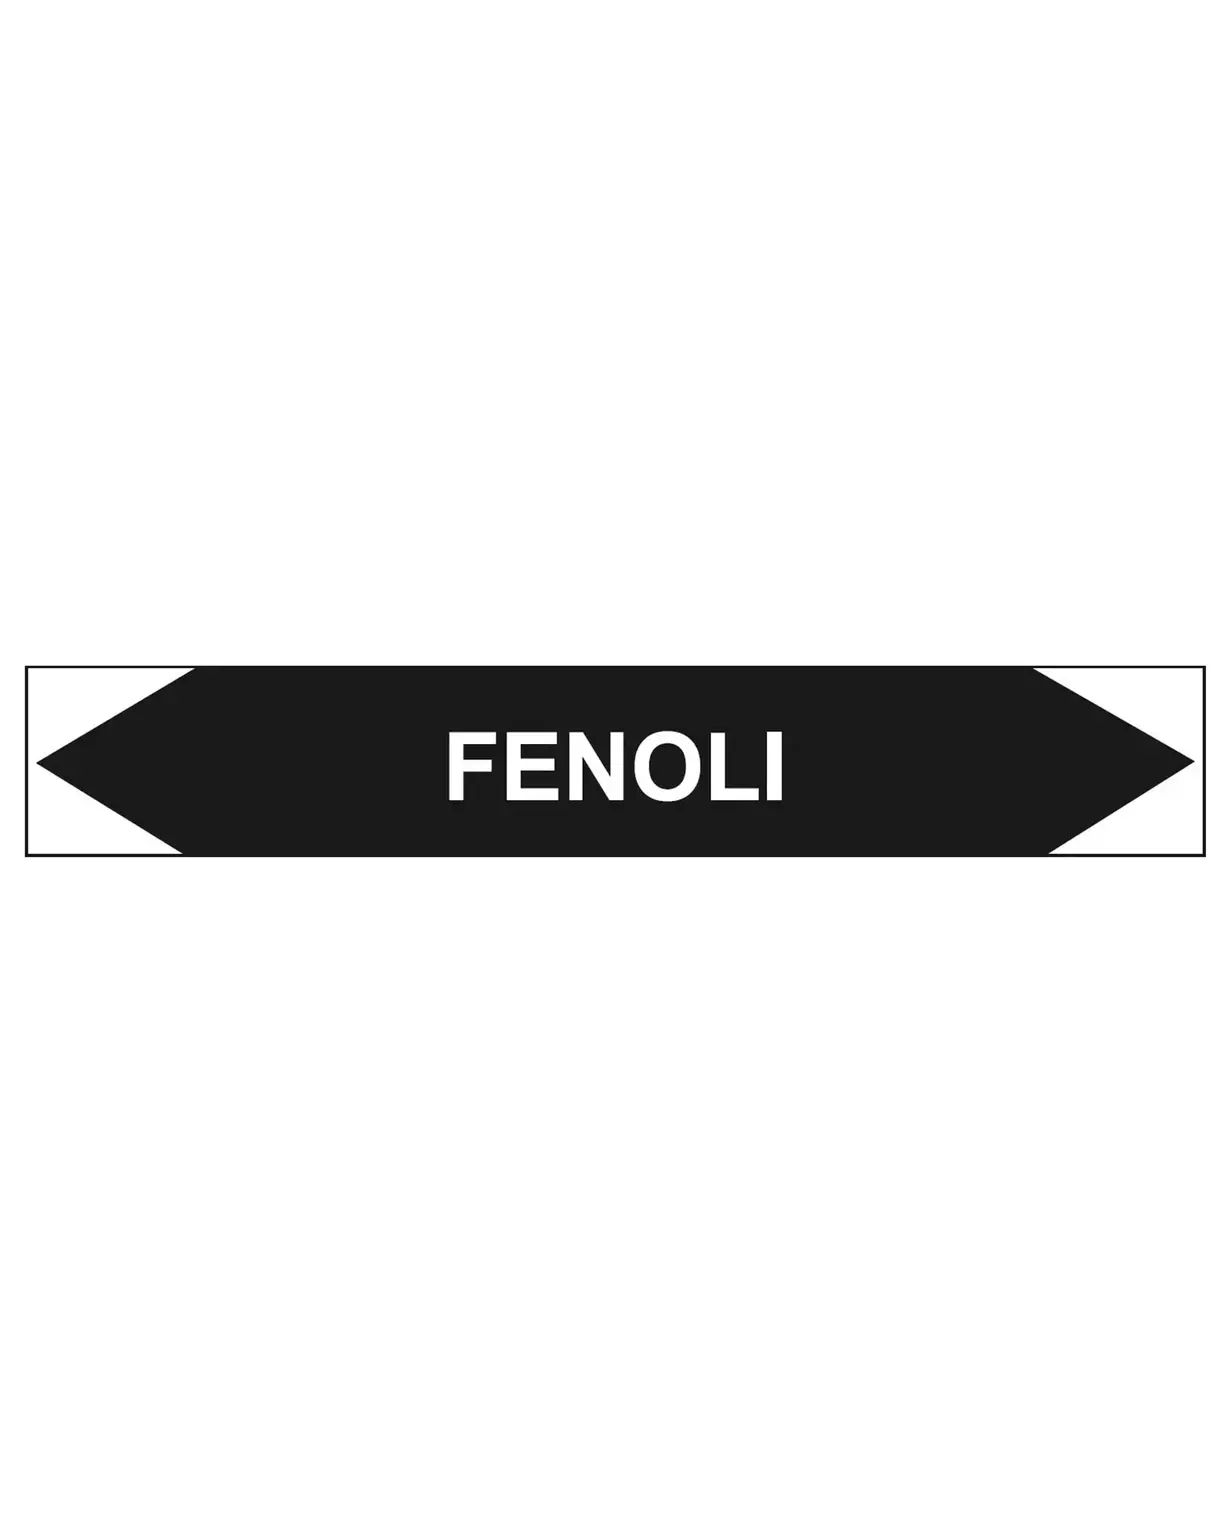 Fenoli, 160x25 mm